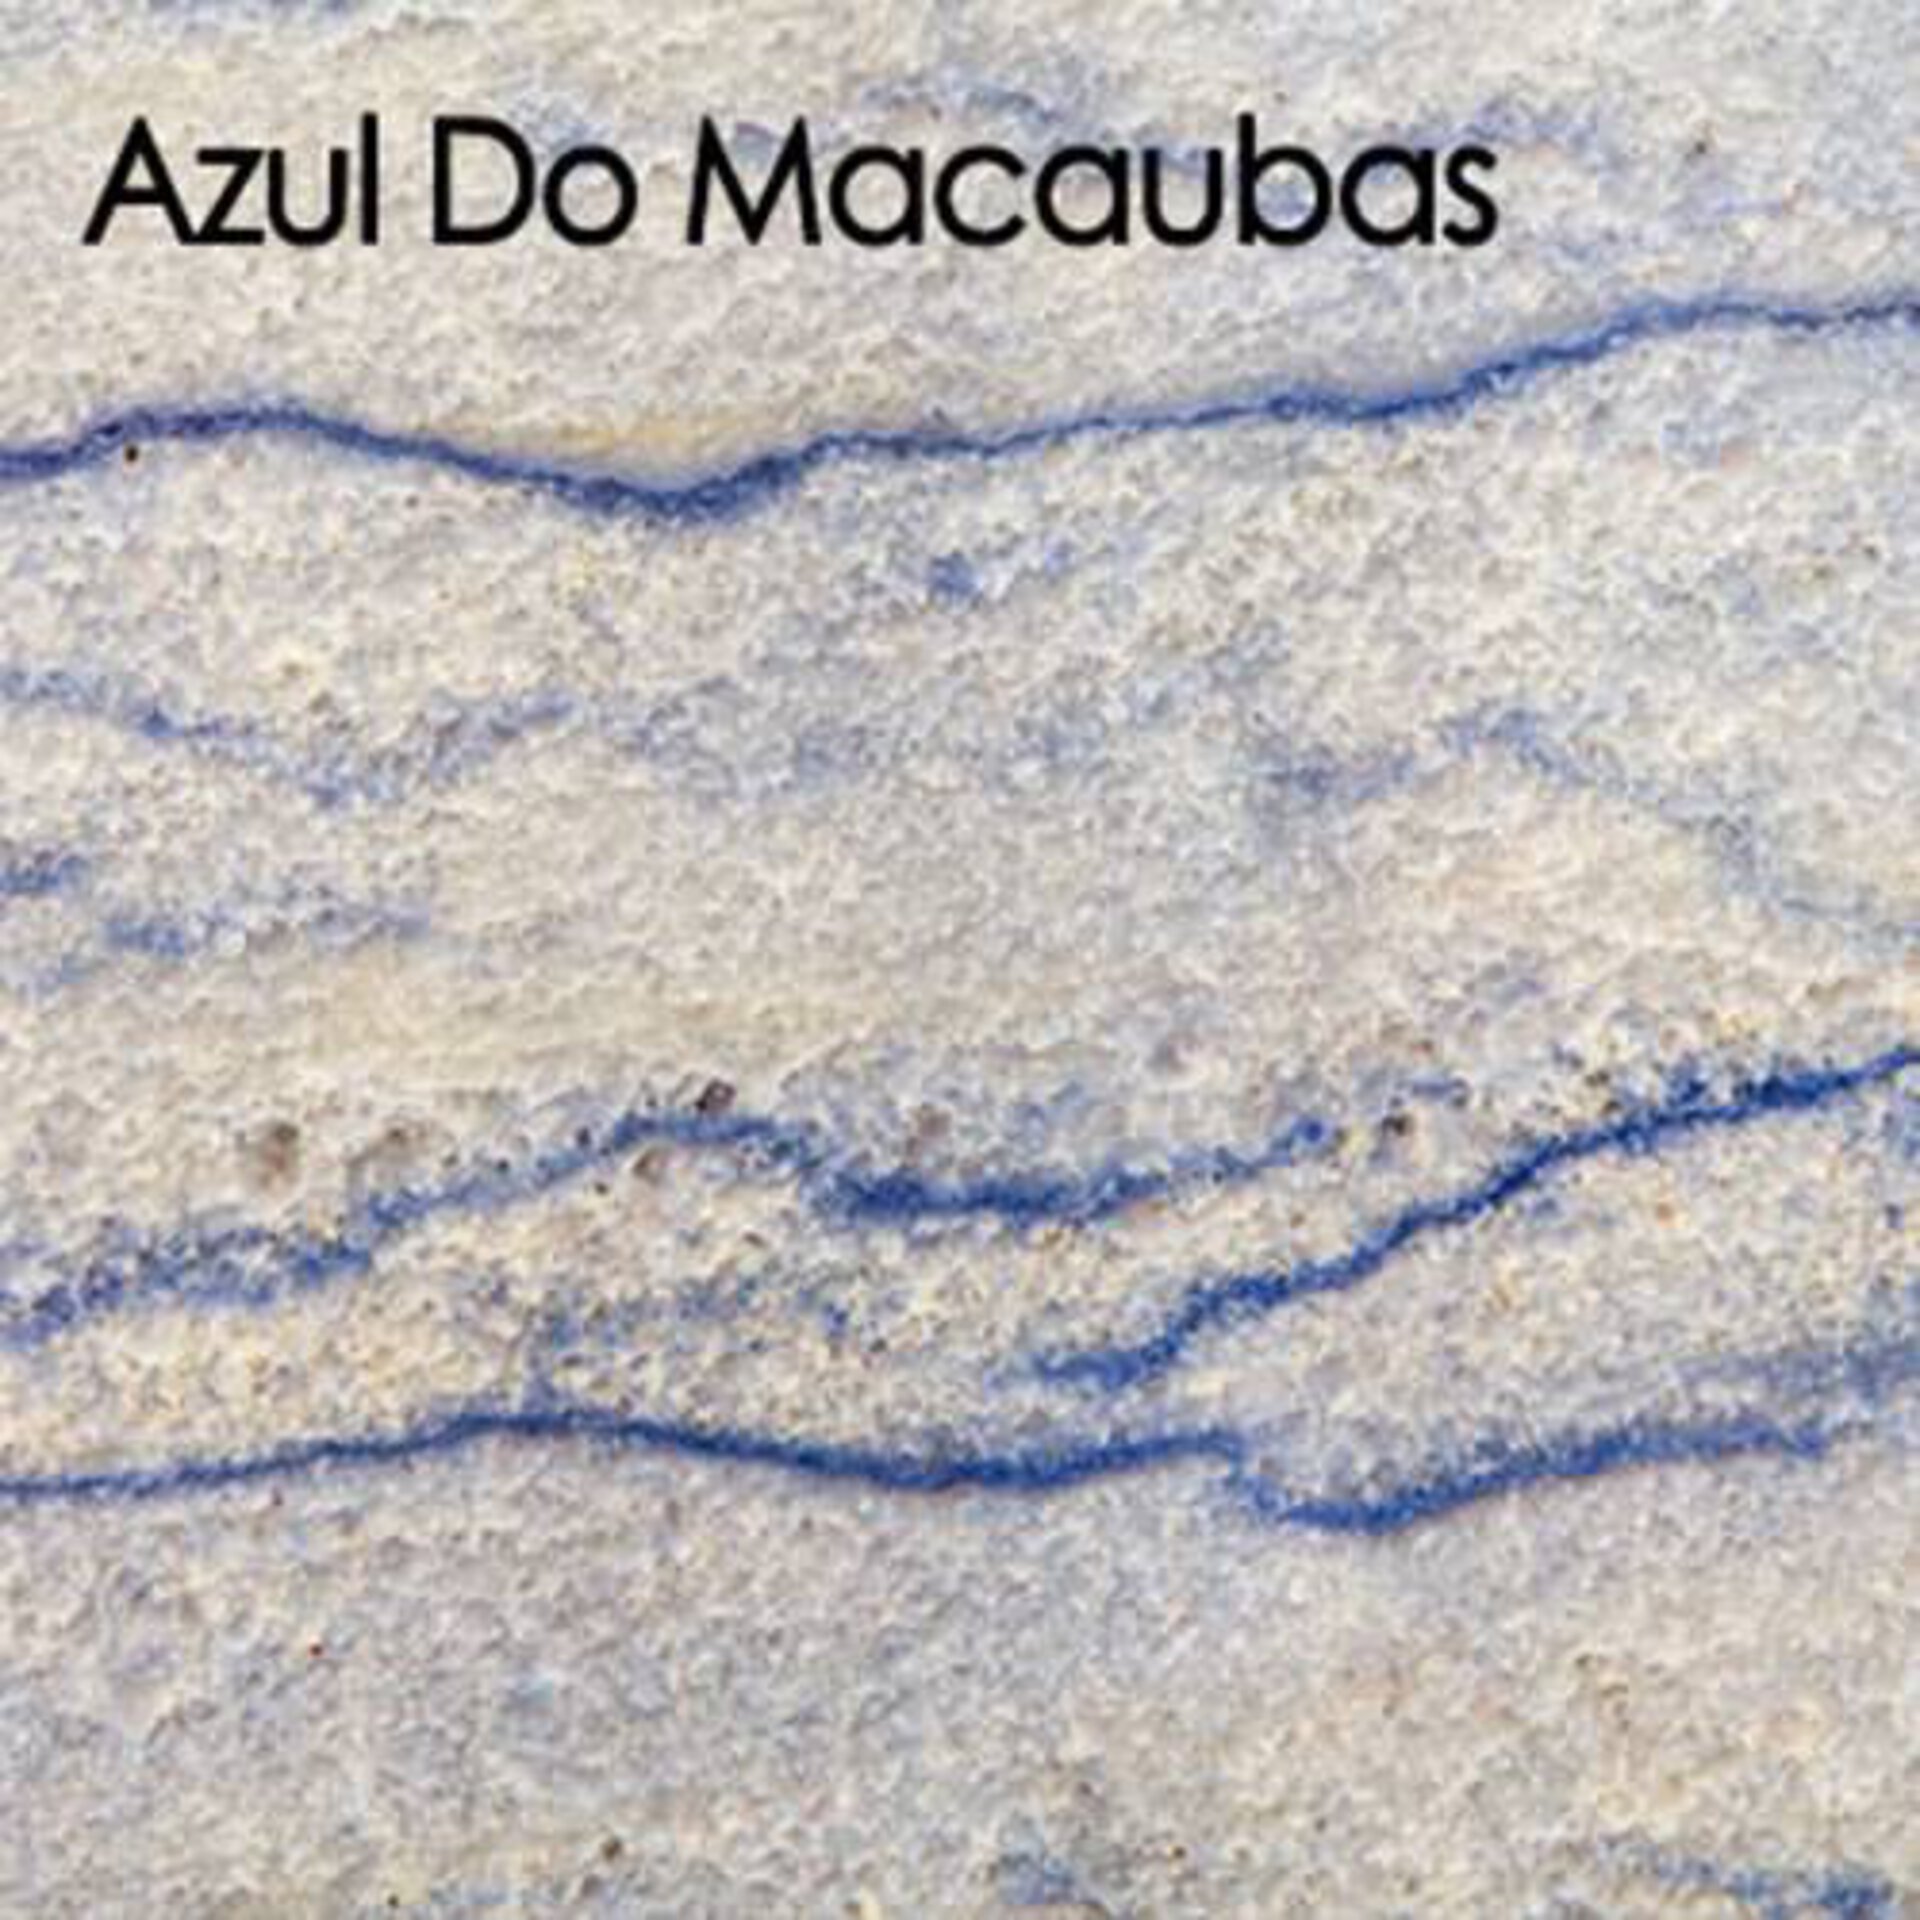 Arbeitsplatte aus Naturstein. Der hellgraue Stein ist mit blauen Linien durchzogen und nennet sich Azul Do Macaubas.